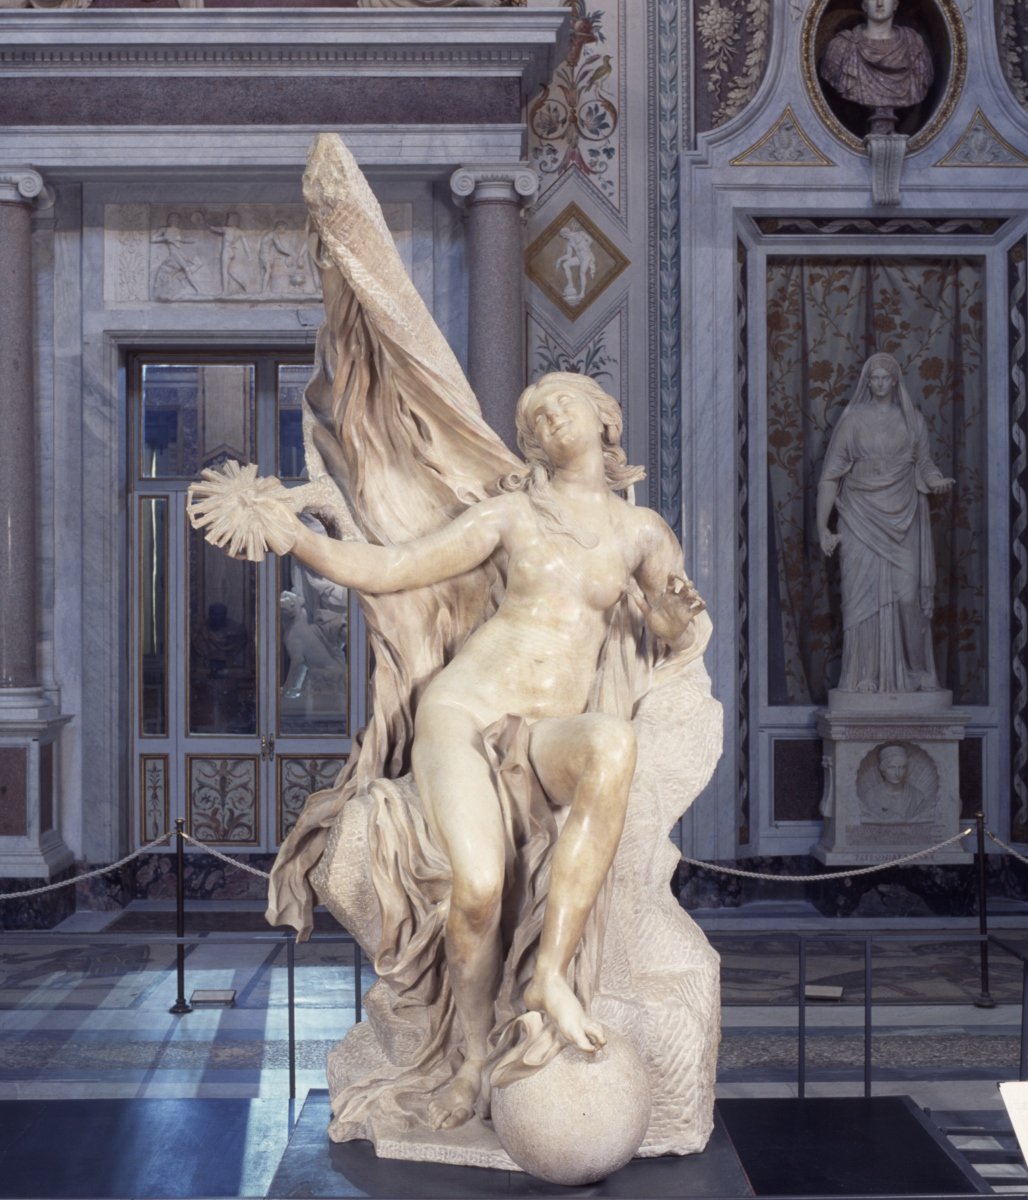 La Verità G. L. Bernini, copyright Ministero dei Beni e delle Attività Culturali e del Turismo, Galleria Borghese